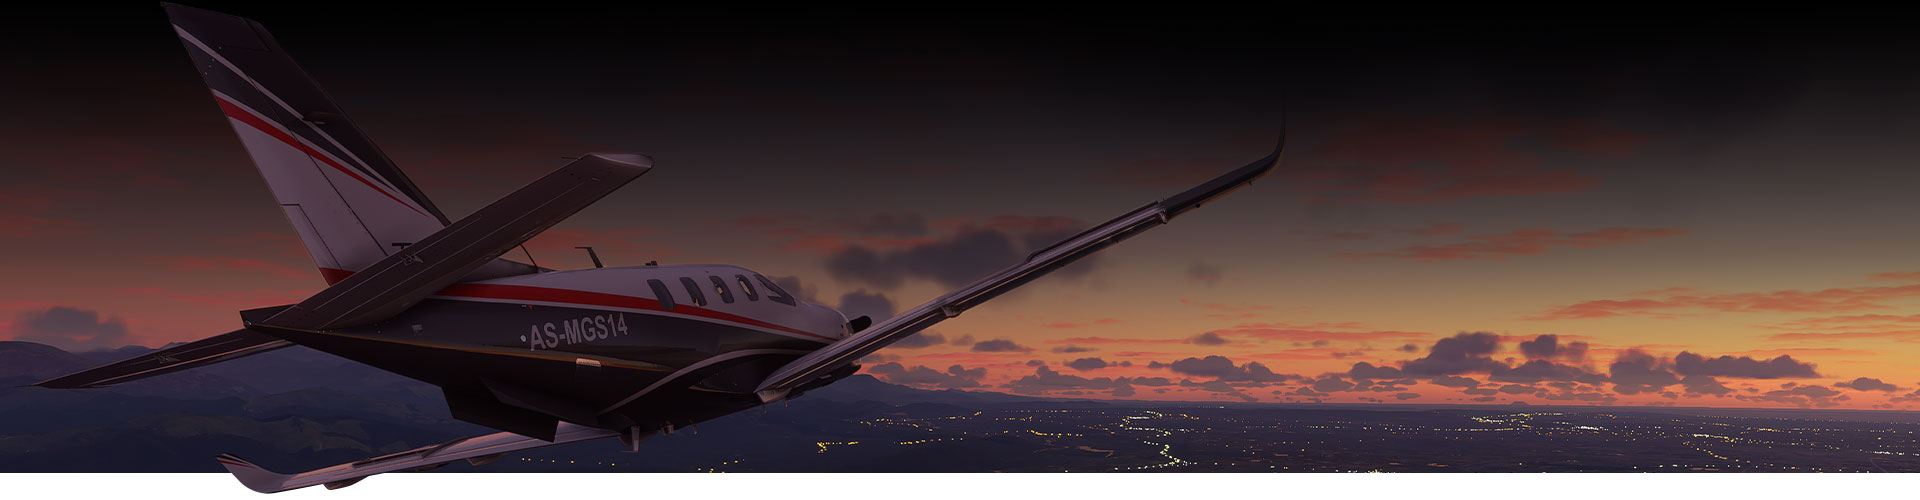 Avião do Microsoft Flight Simulator sobrevoando uma cidade no por do sol